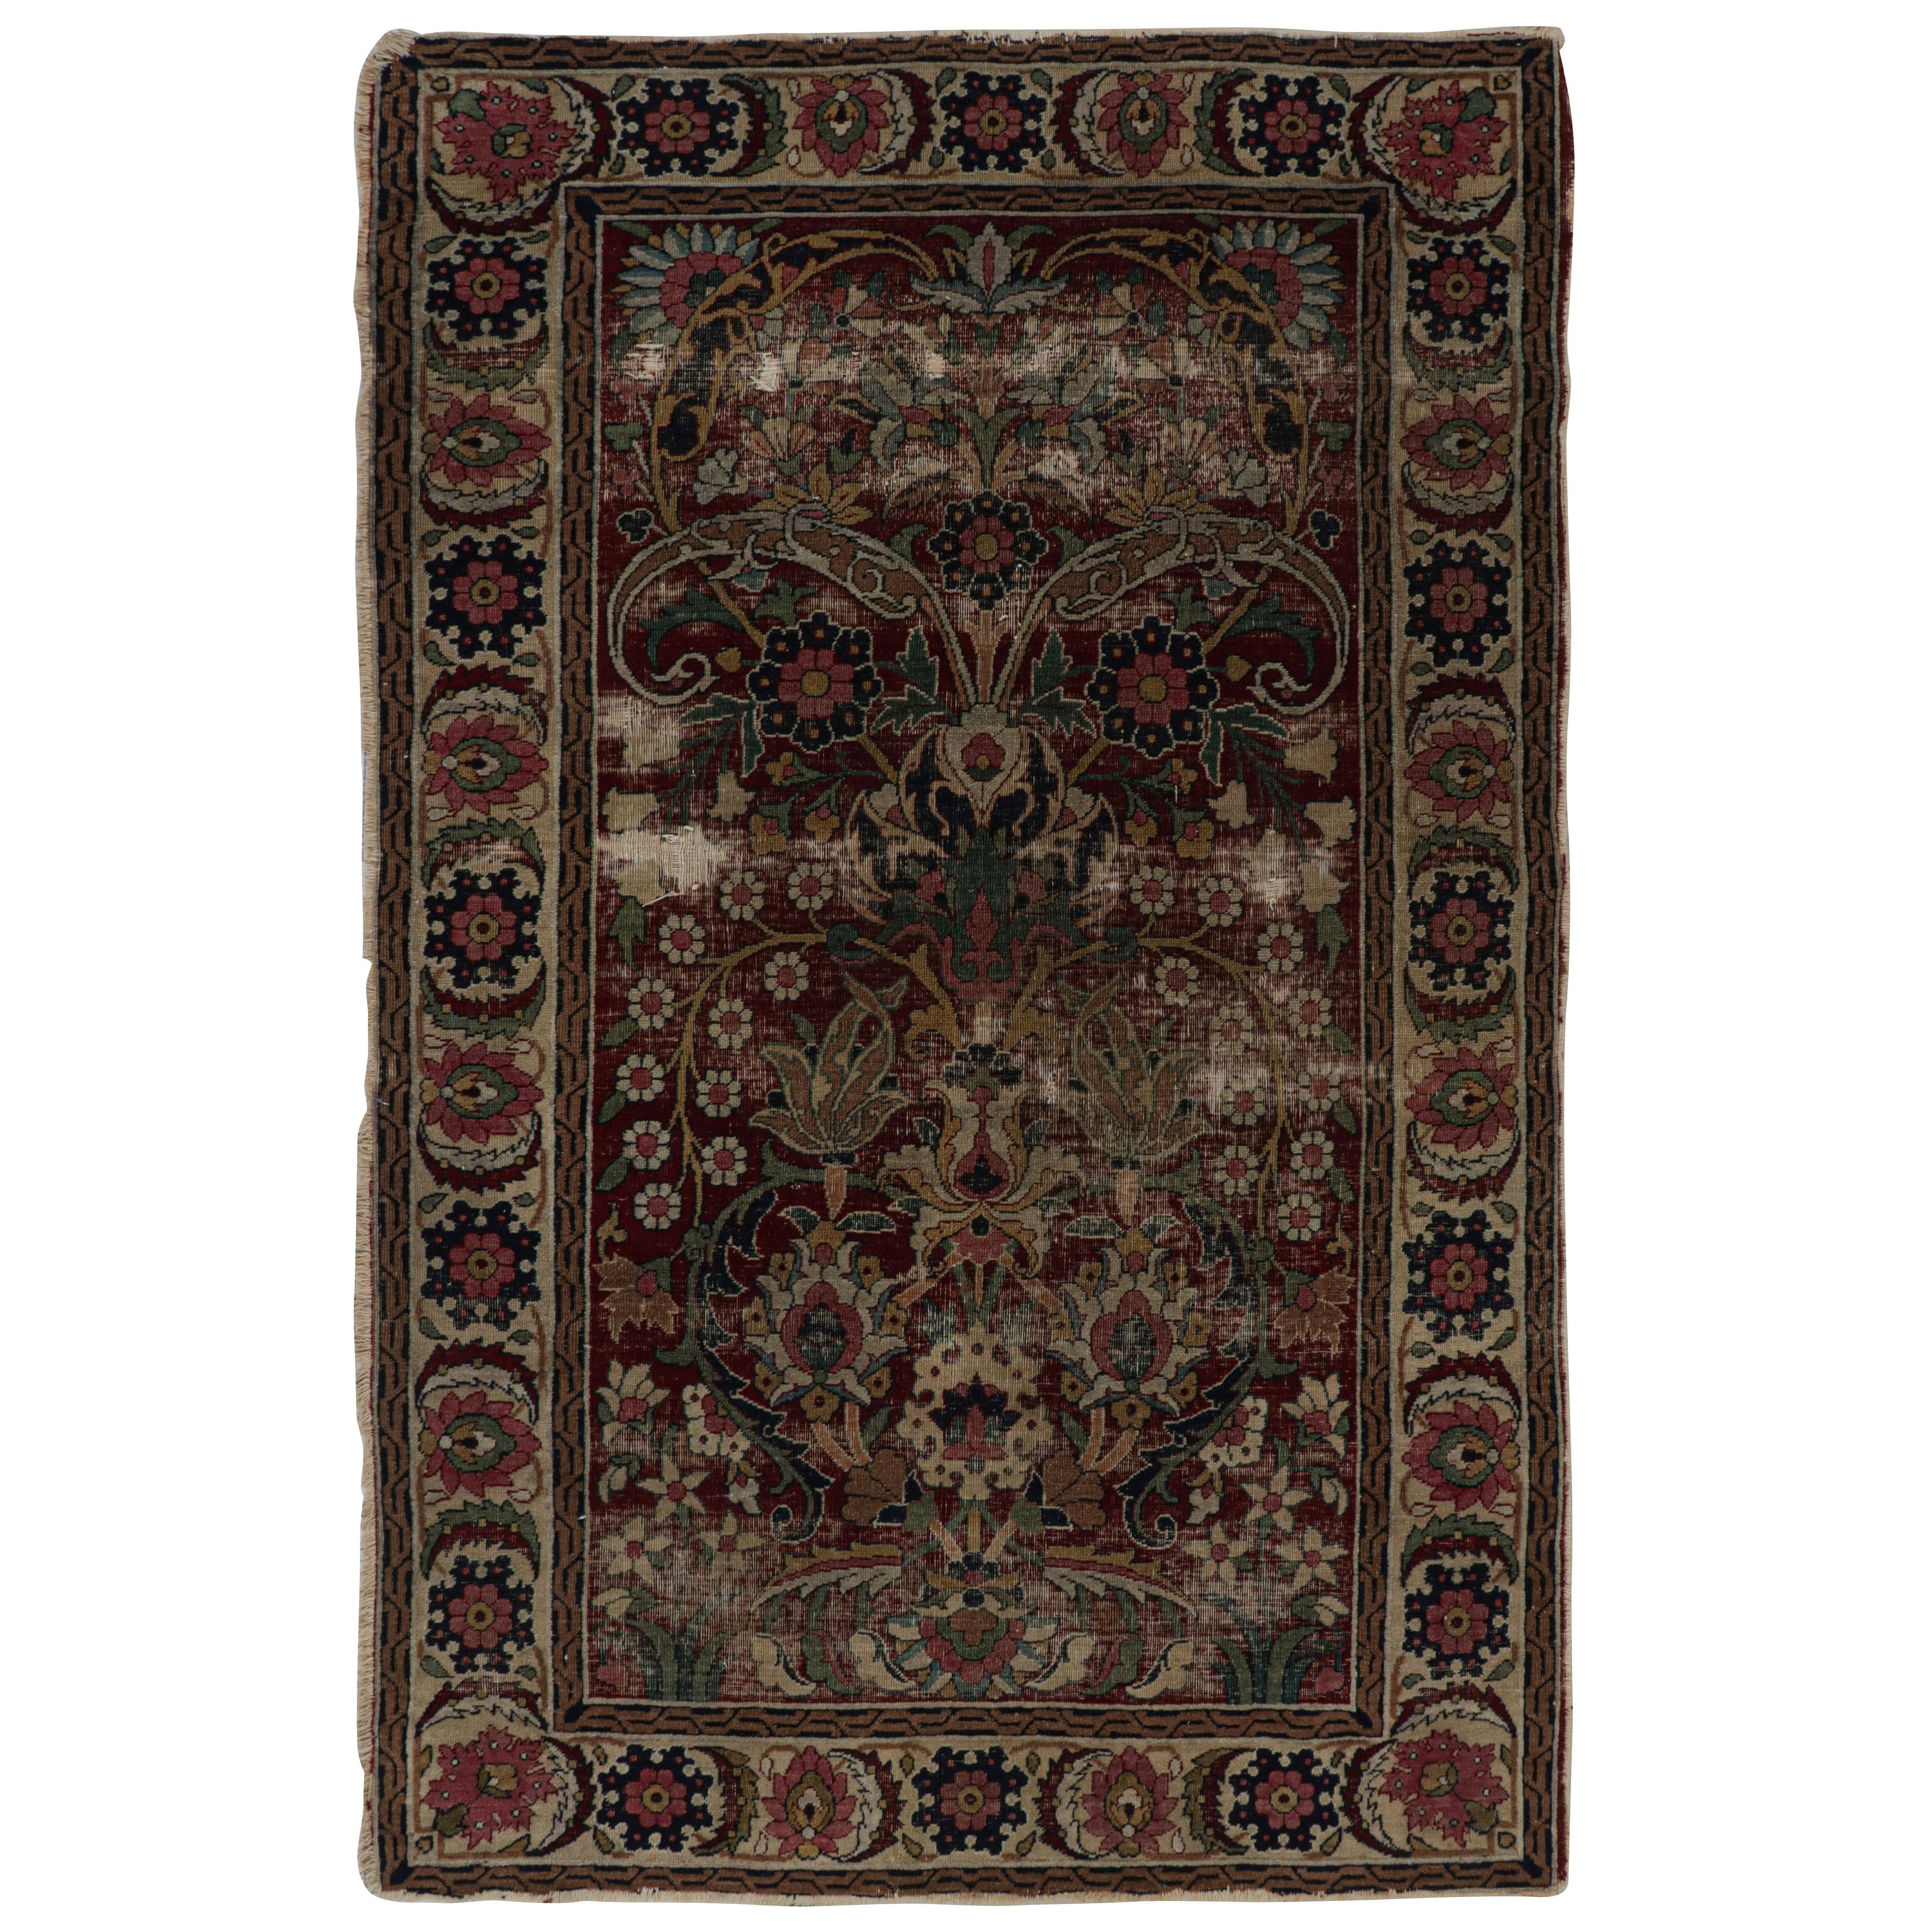 Antiker persischer Khorassan Teppich in Burgund mit floralen Mustern, von Rug & Kilim